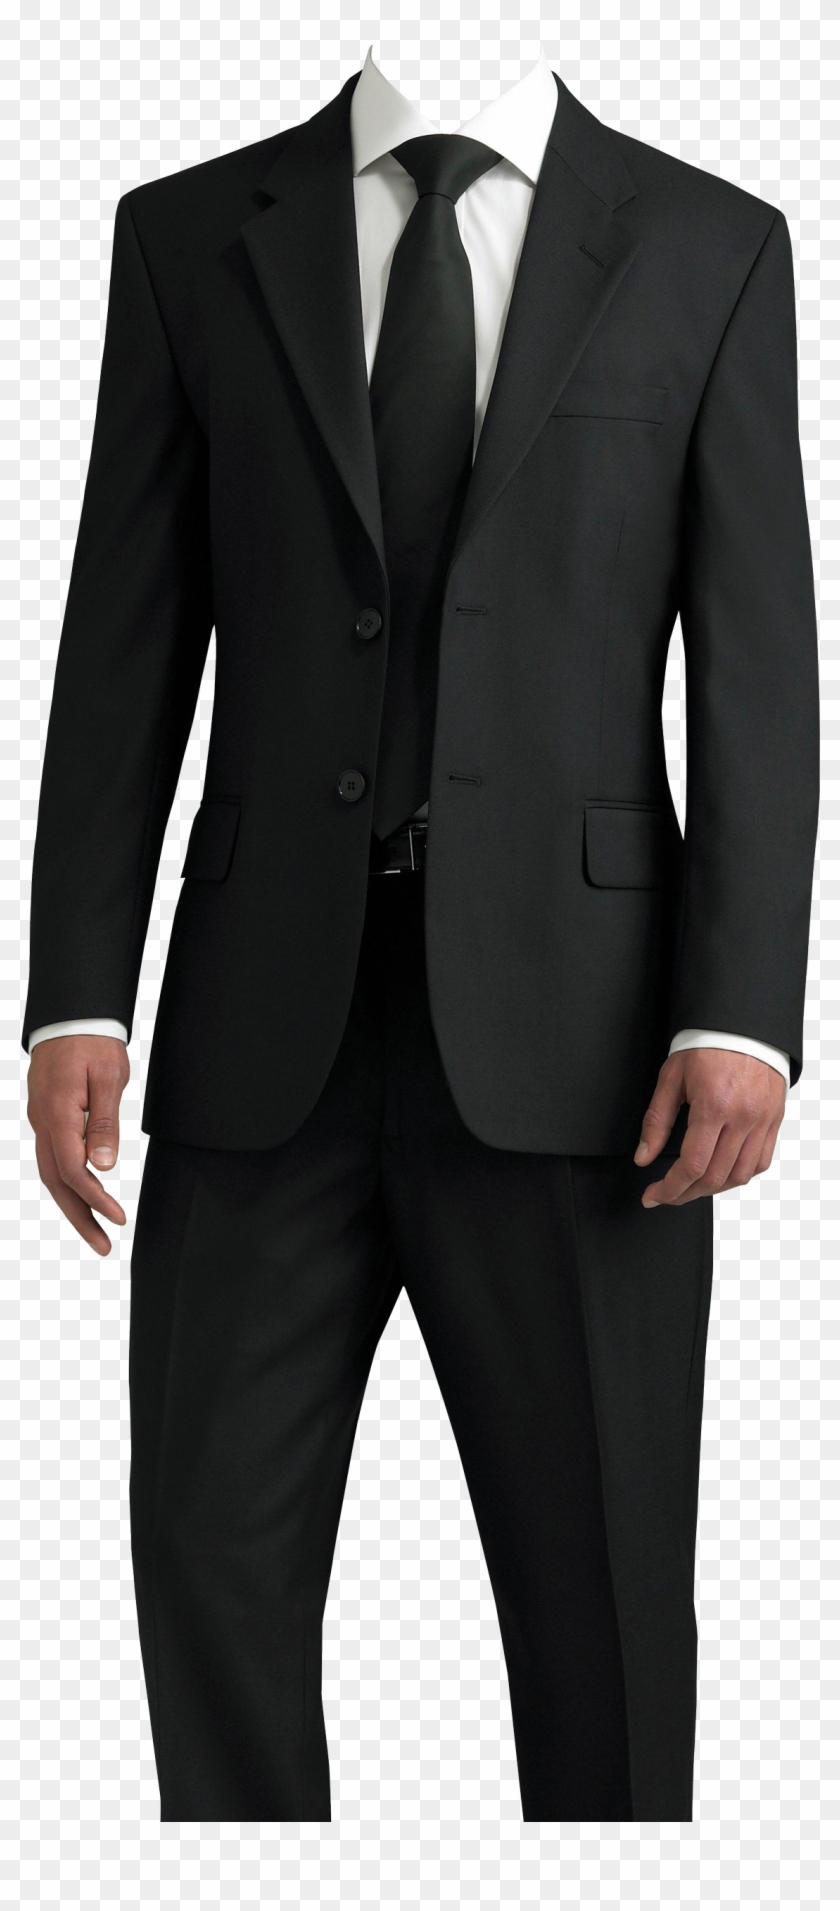 Suit Png Transparent Image - Man In A Suit Png Clipart #482423